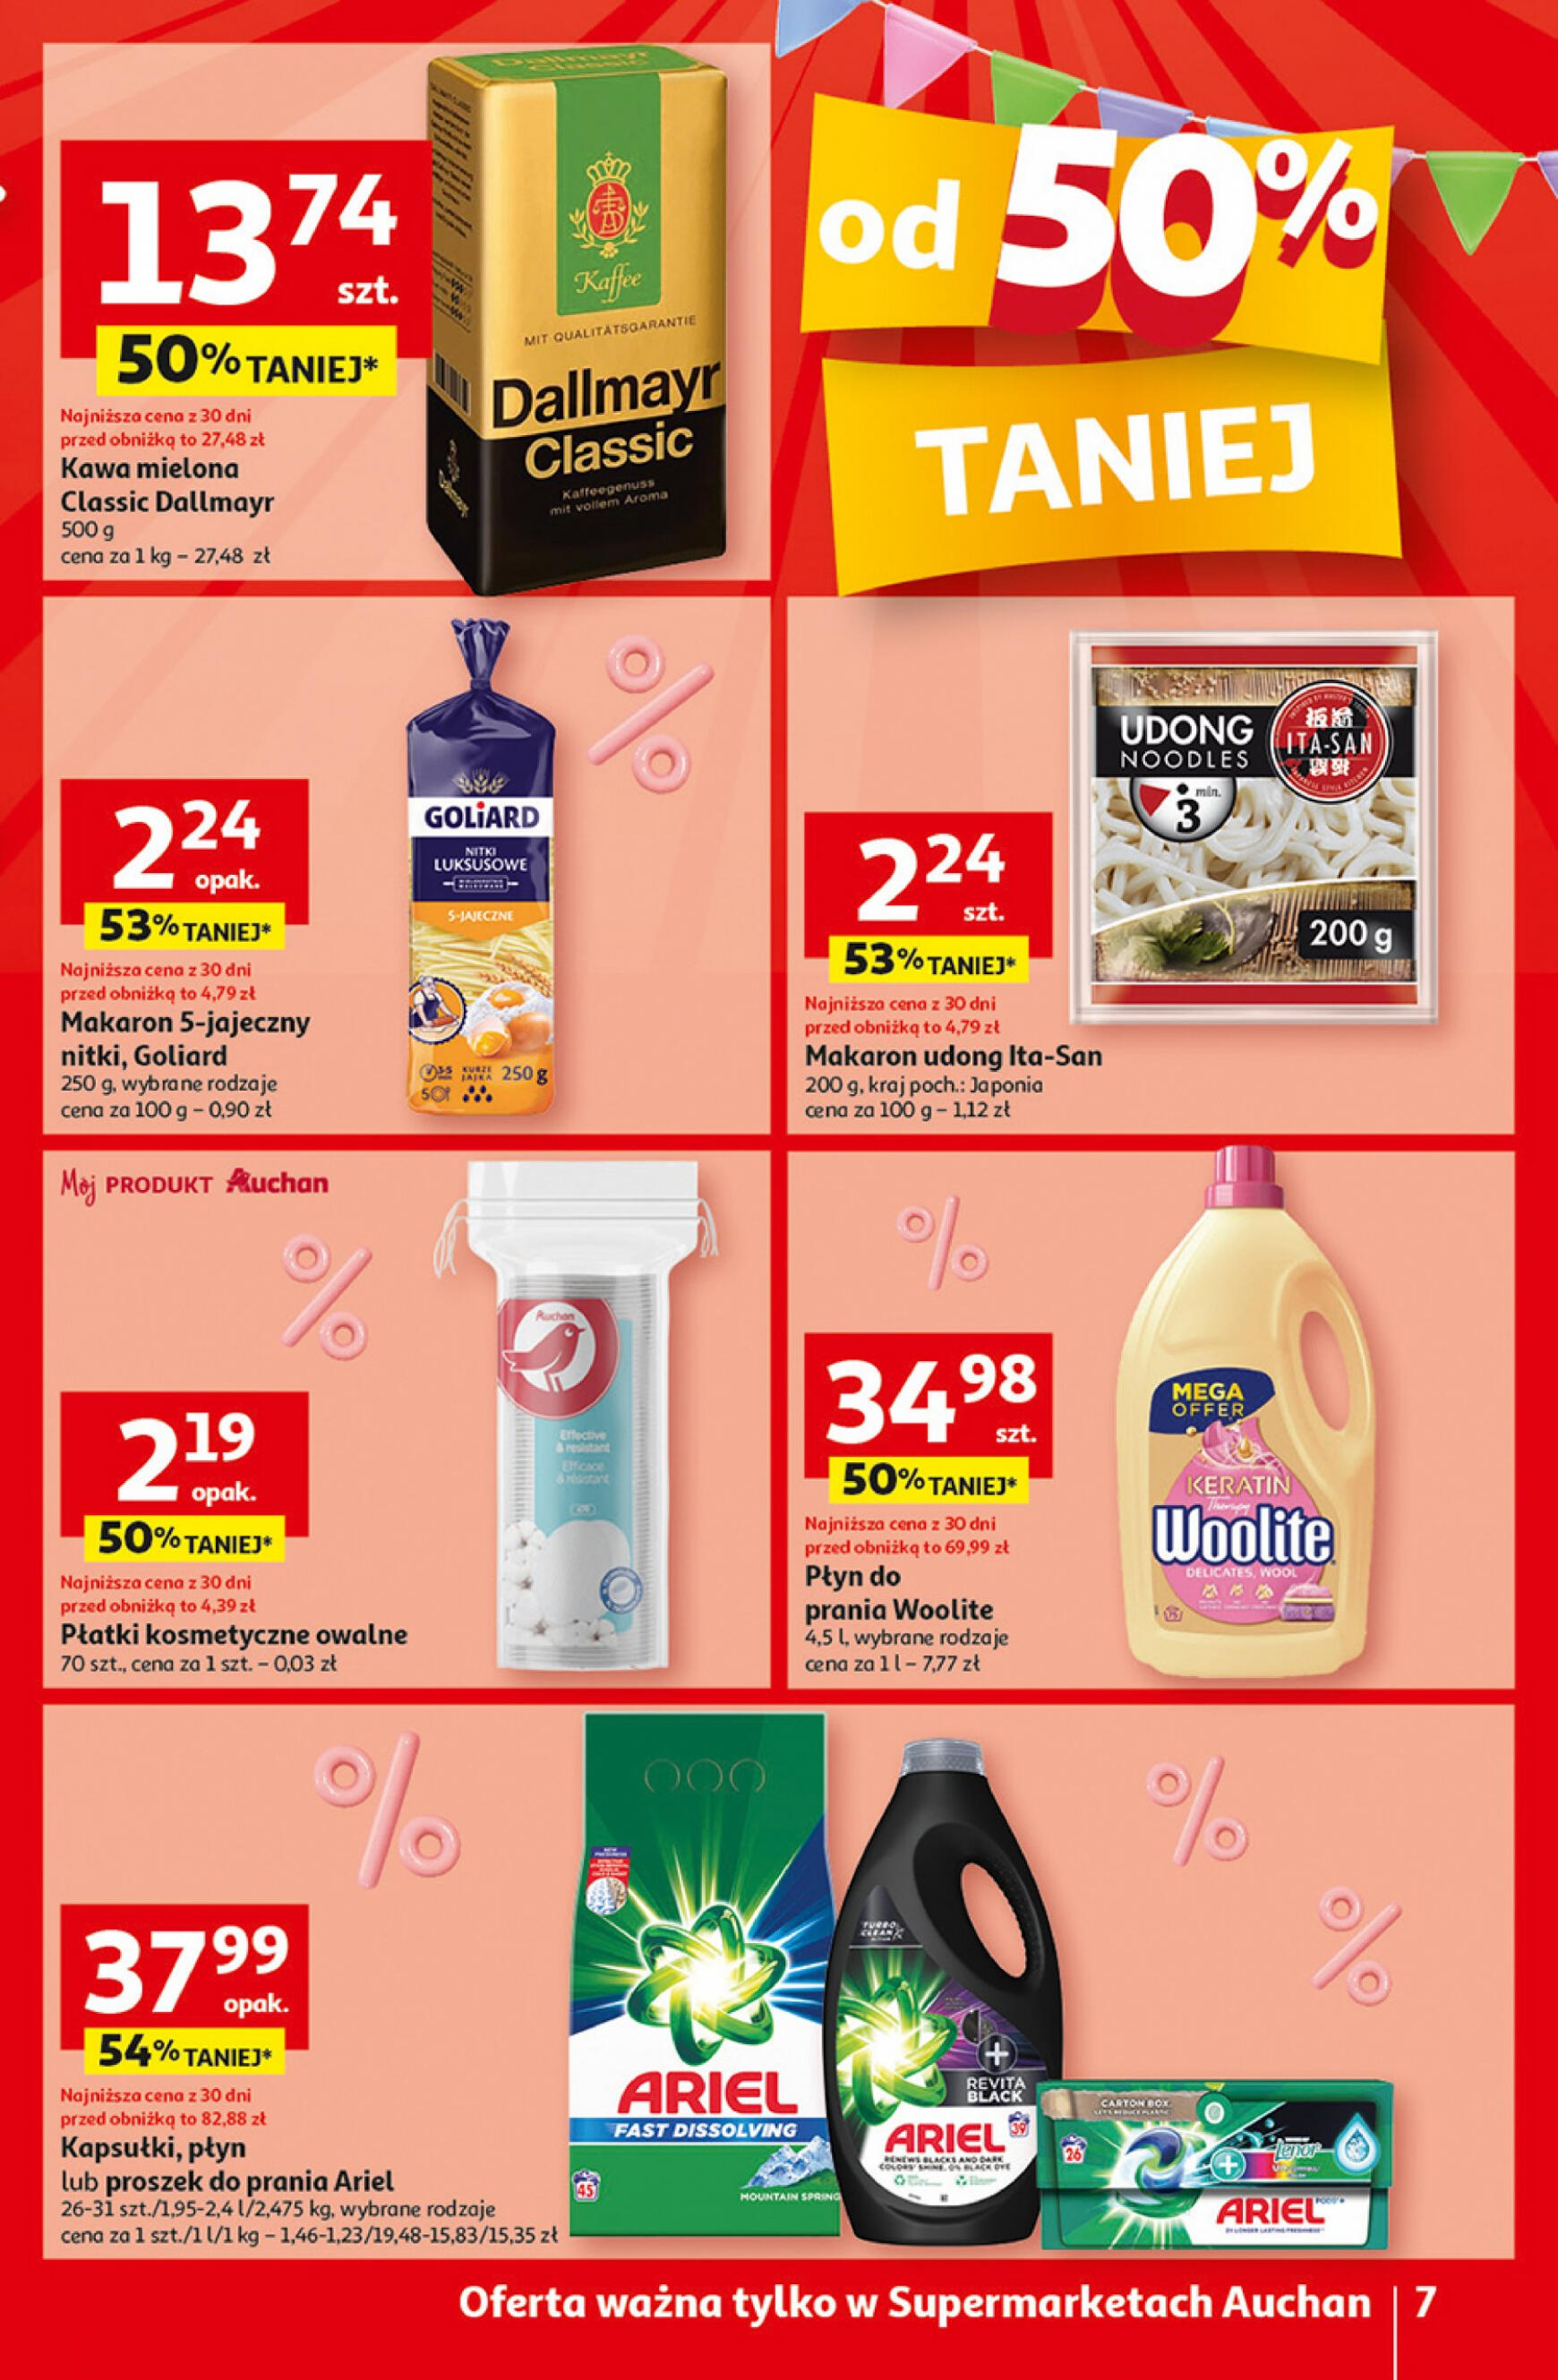 auchan - Supermarket Auchan - Gazetka Jeszcze taniej na urodziny gazetka aktualna ważna od 09.05. - 15.05. - page: 7